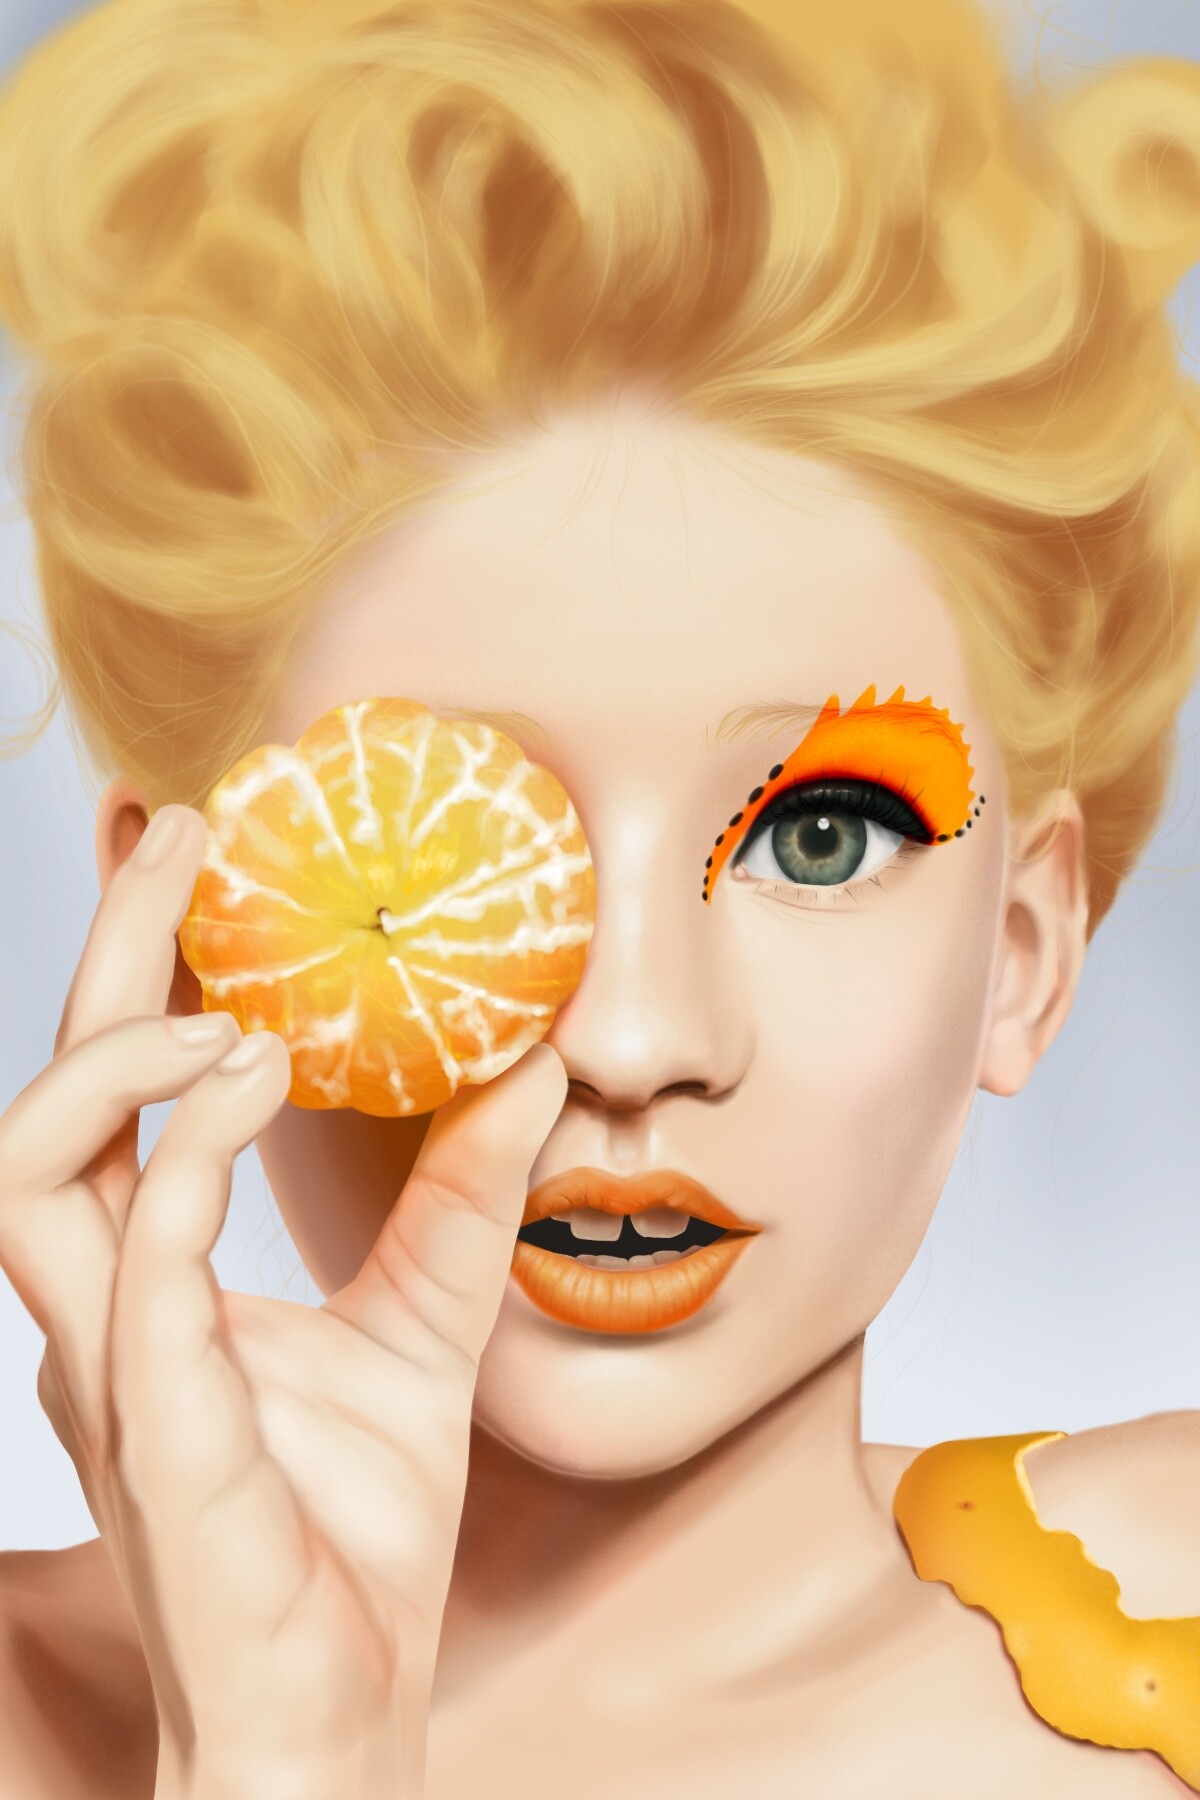 ArtStation - Portrait of the Tangerine Girl